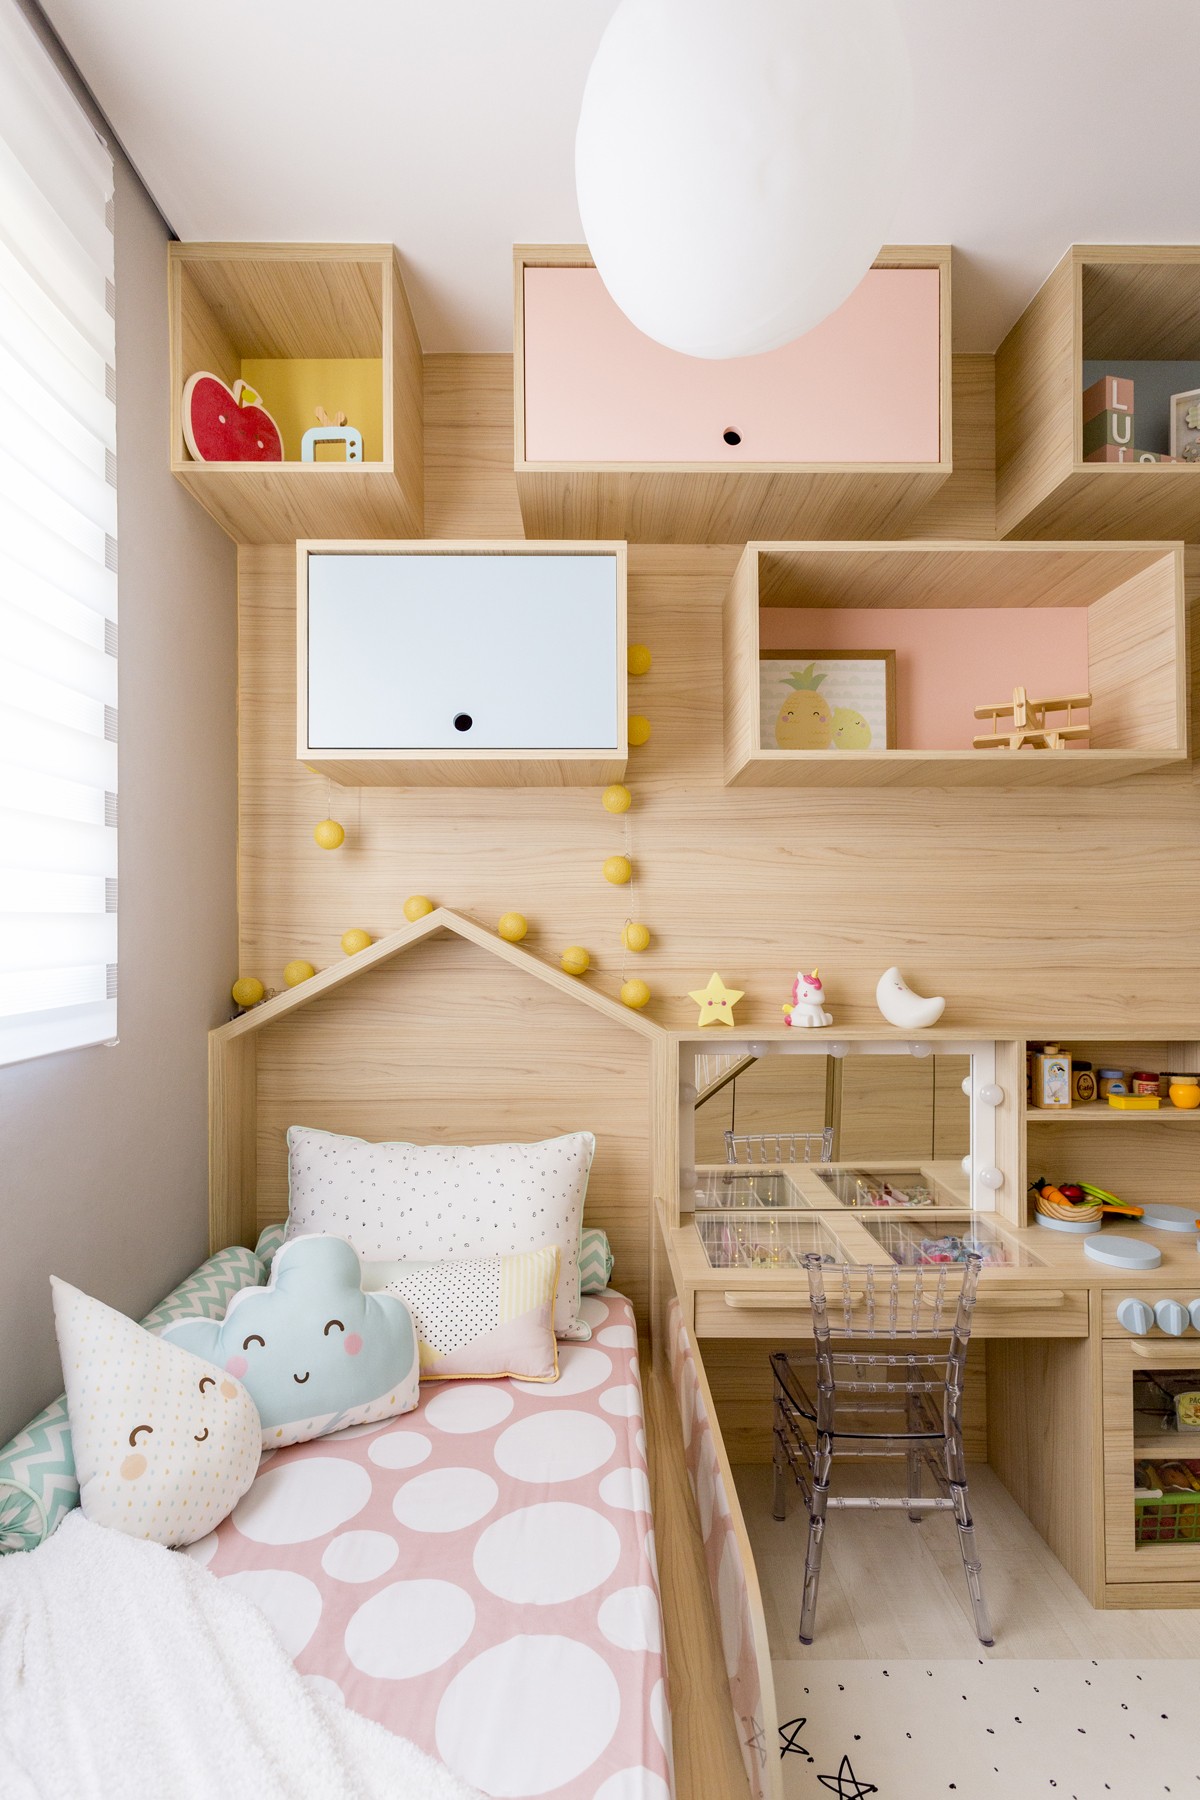 Décor do dia: quarto infantil com decoração lúdica e espaço para atividades (Foto: Matho Fotografia)